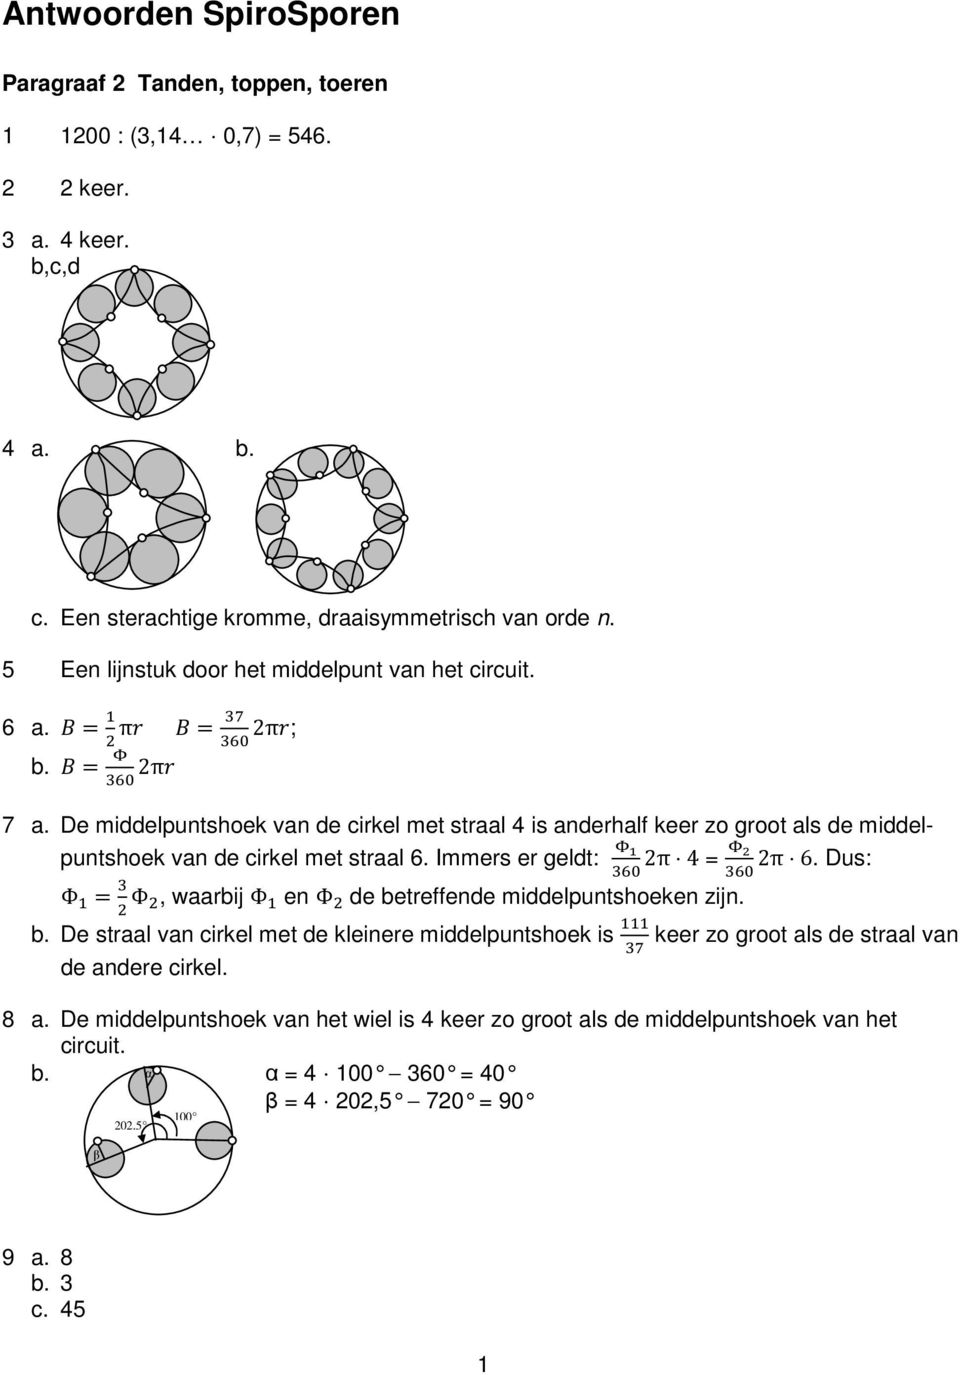 De middelpuntshoek van de cirkel met straal 4 is anderhalf keer zo groot als de middelpuntshoek van de cirkel met straal 6. Immers er geldt: 2π 4 = 2π 6.